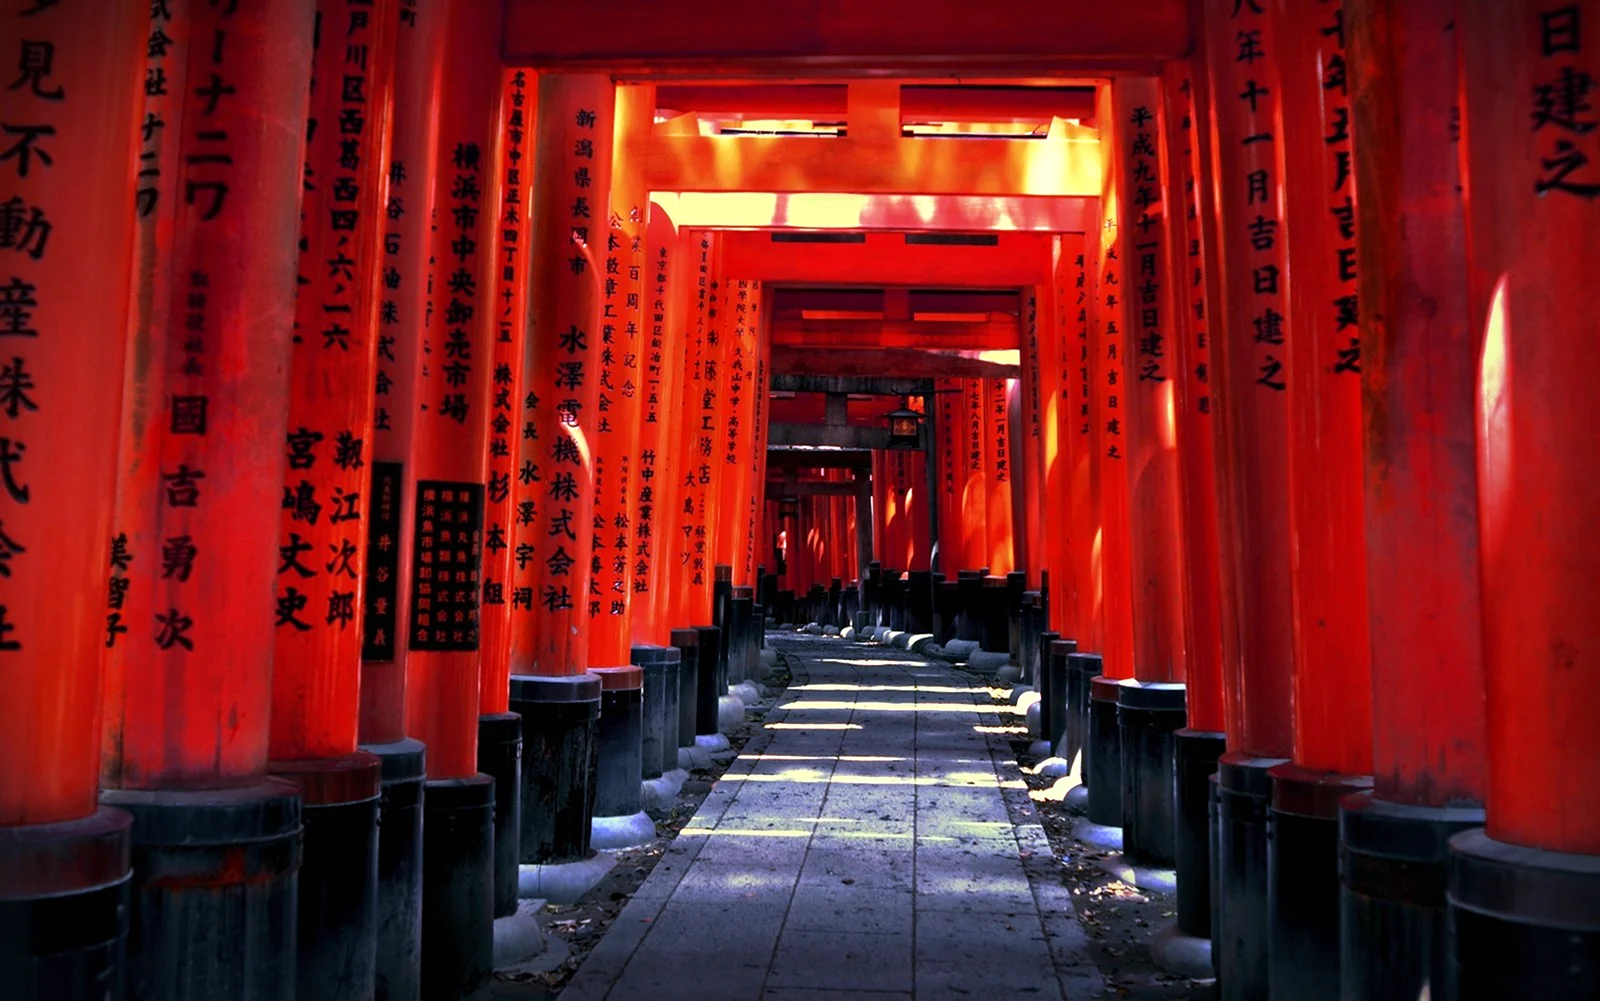 Храм Фусими Инари в Японии